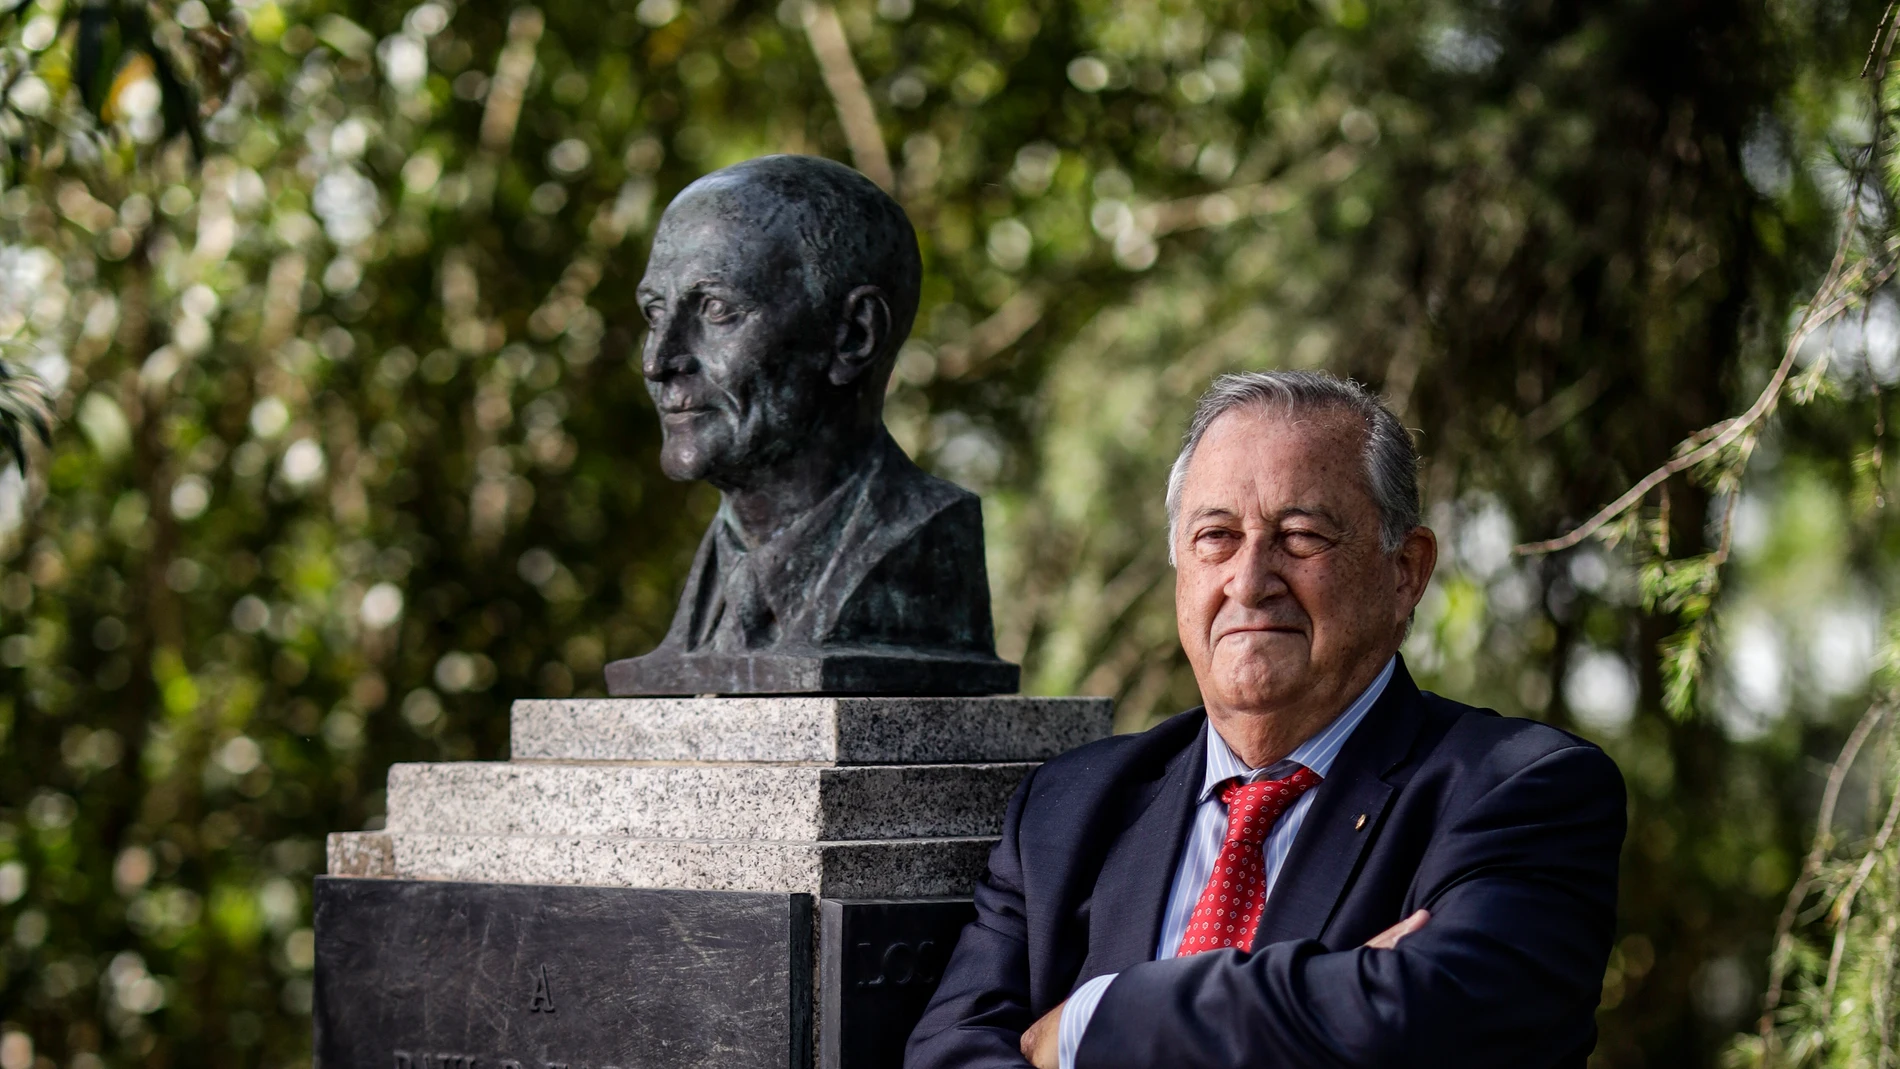 Manuel Valentín Gamazo, abogado, junto al monumento al fundador del Rotary Club, Paul Harris, en el Parque del Oeste de Madridde Madrid